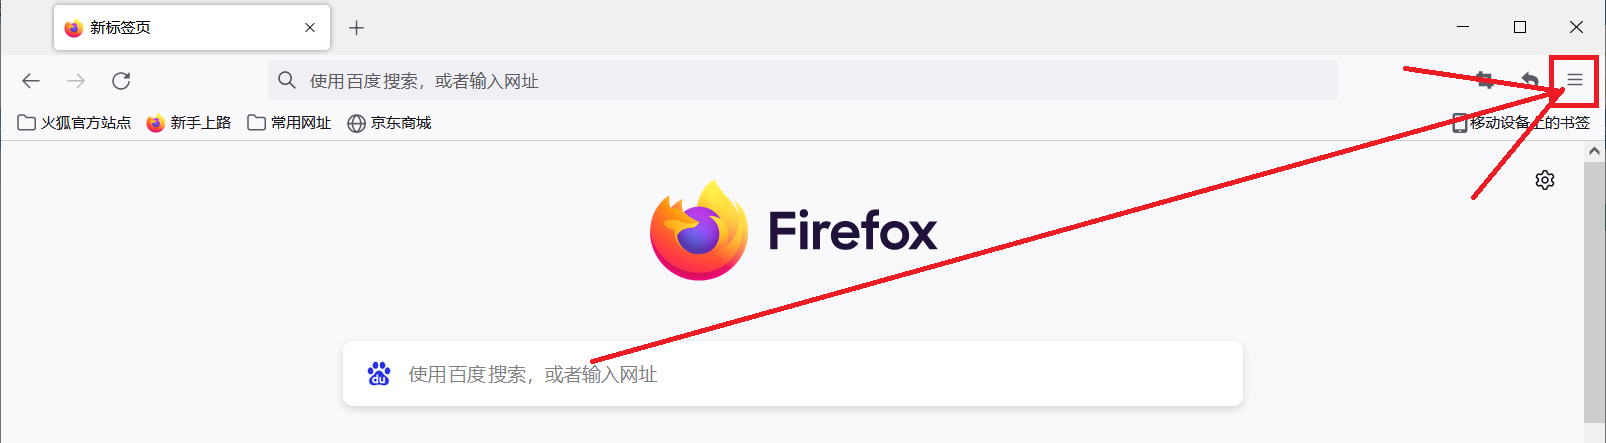 火狐浏览器怎么清理缓存 火狐浏览器怎么清理缓存?电脑